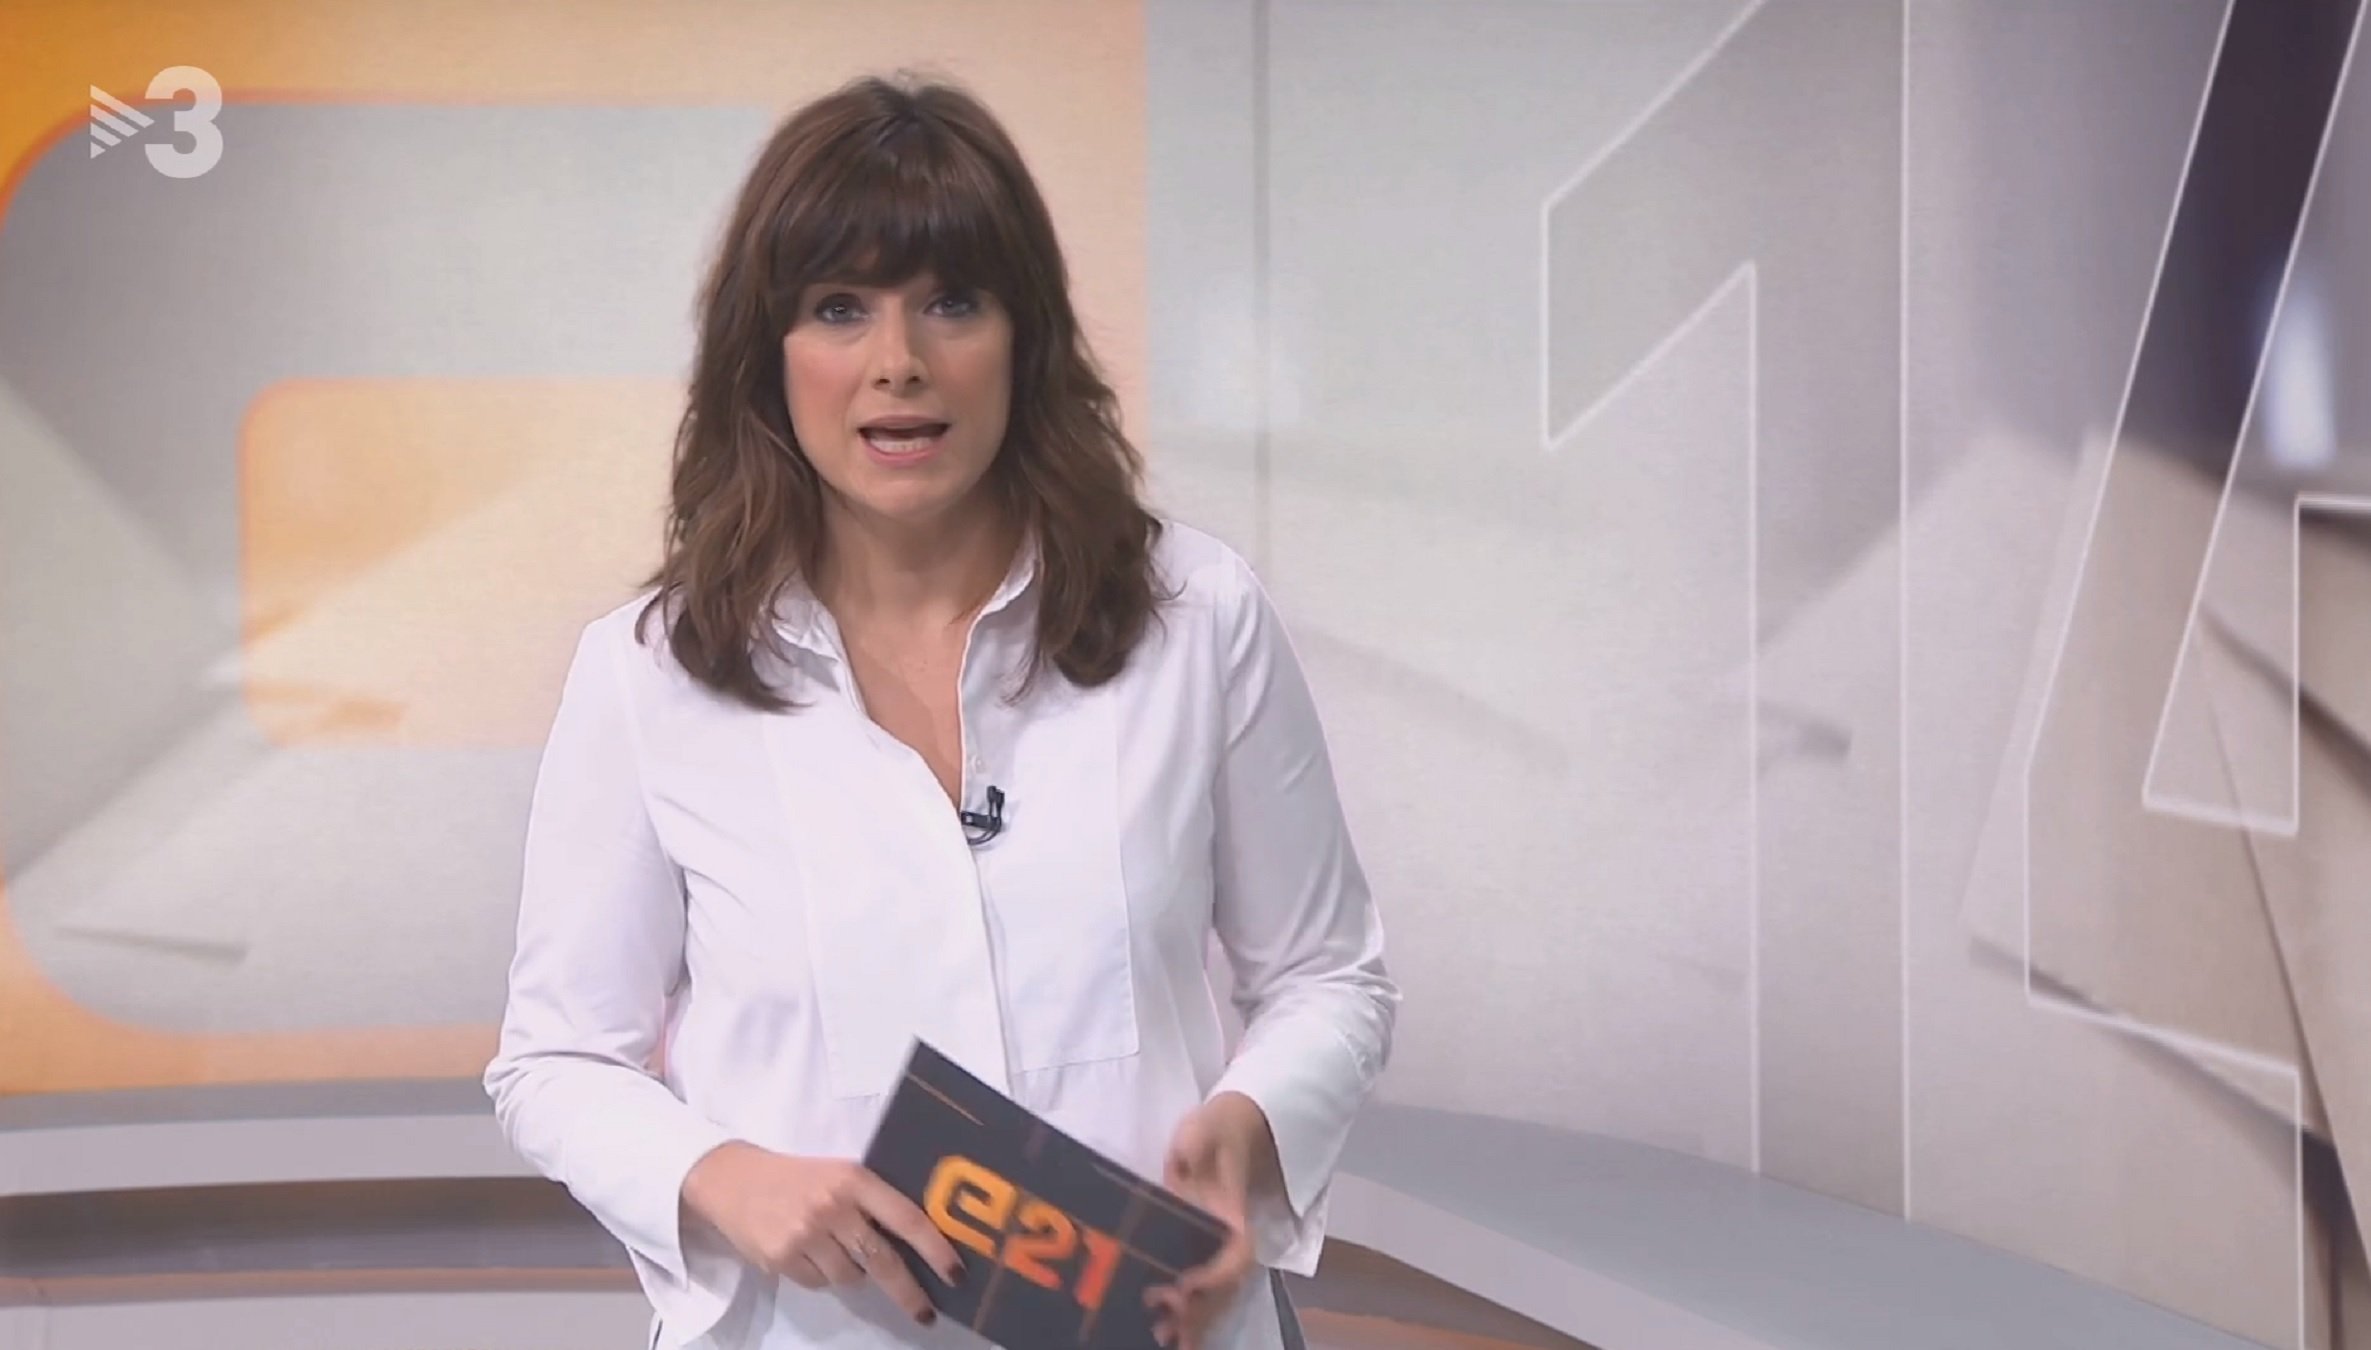 Ariadna Oltra, líder a TV3, fa una confessió íntima a RAC1: "Vaig a teràpia"